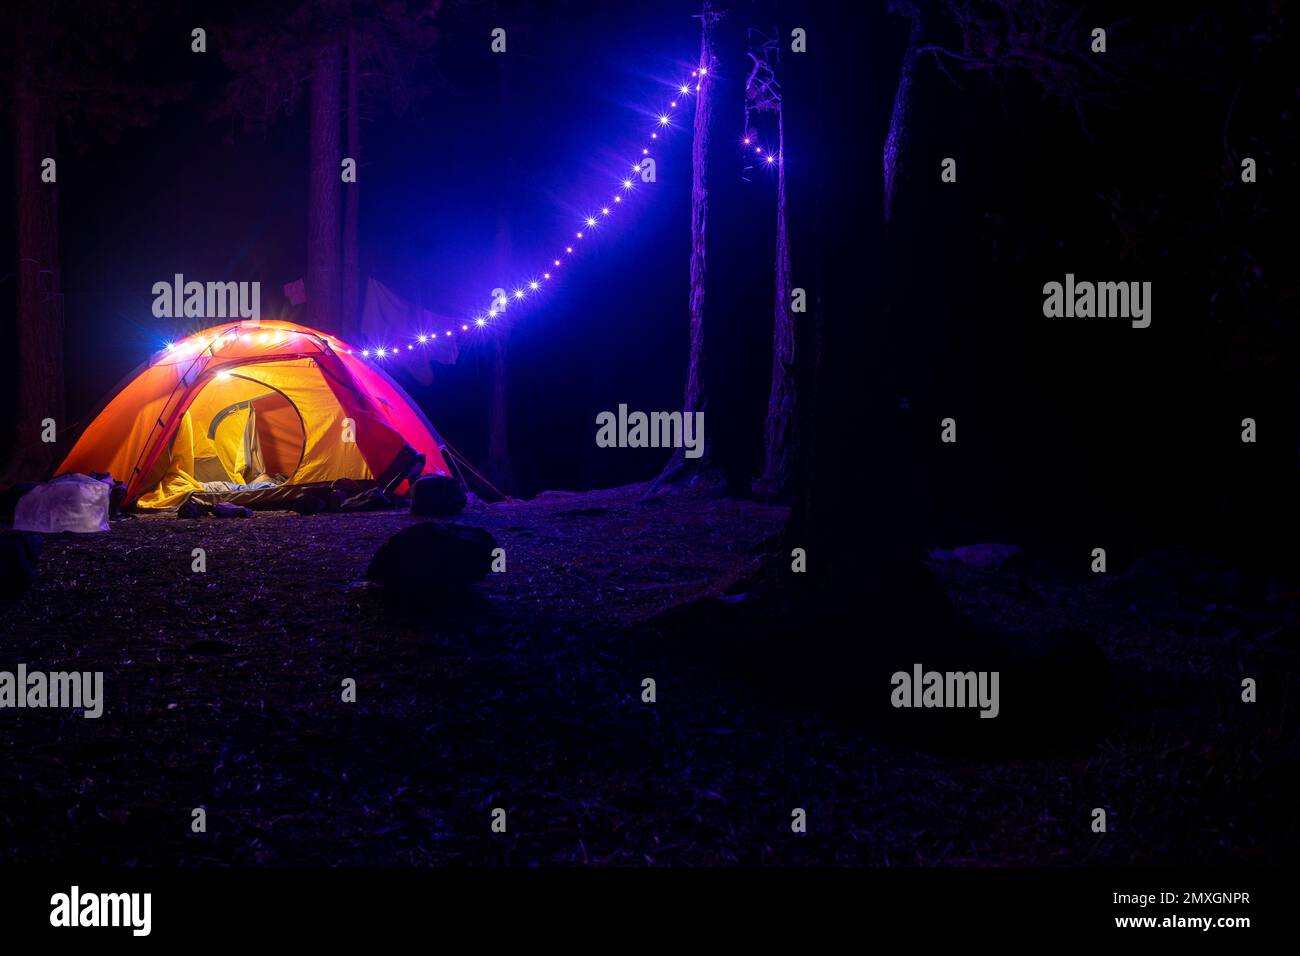 Das Touristenzelt der Reisenden leuchtet nachts in den Bäumen mit Girlanden in kompletter Dunkelheit. Stockfoto